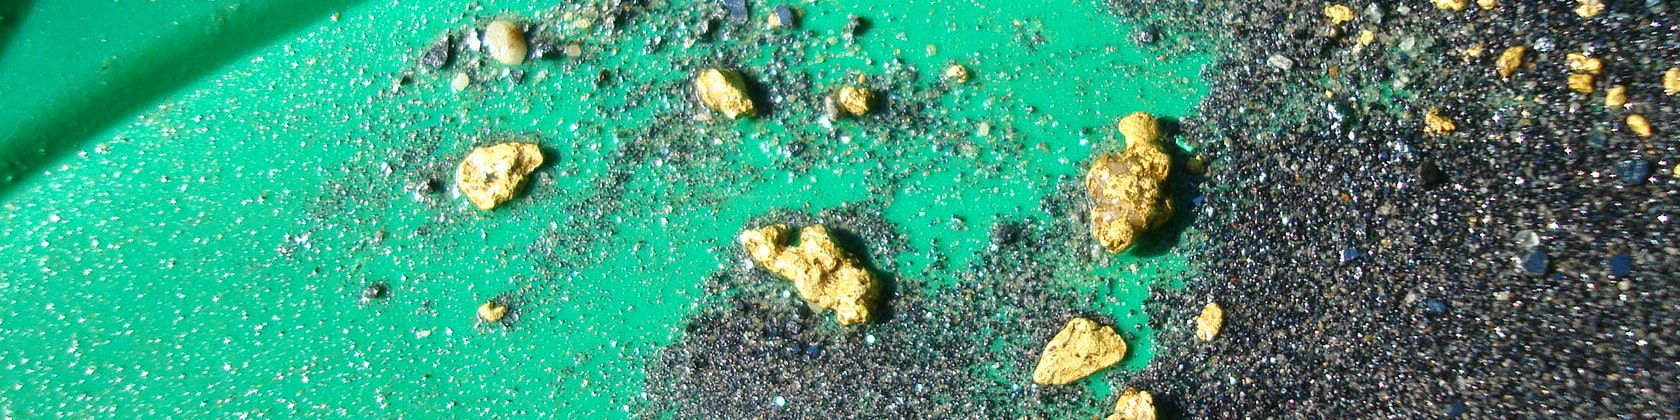 Goldnuggets gefunden von aurira GmbH